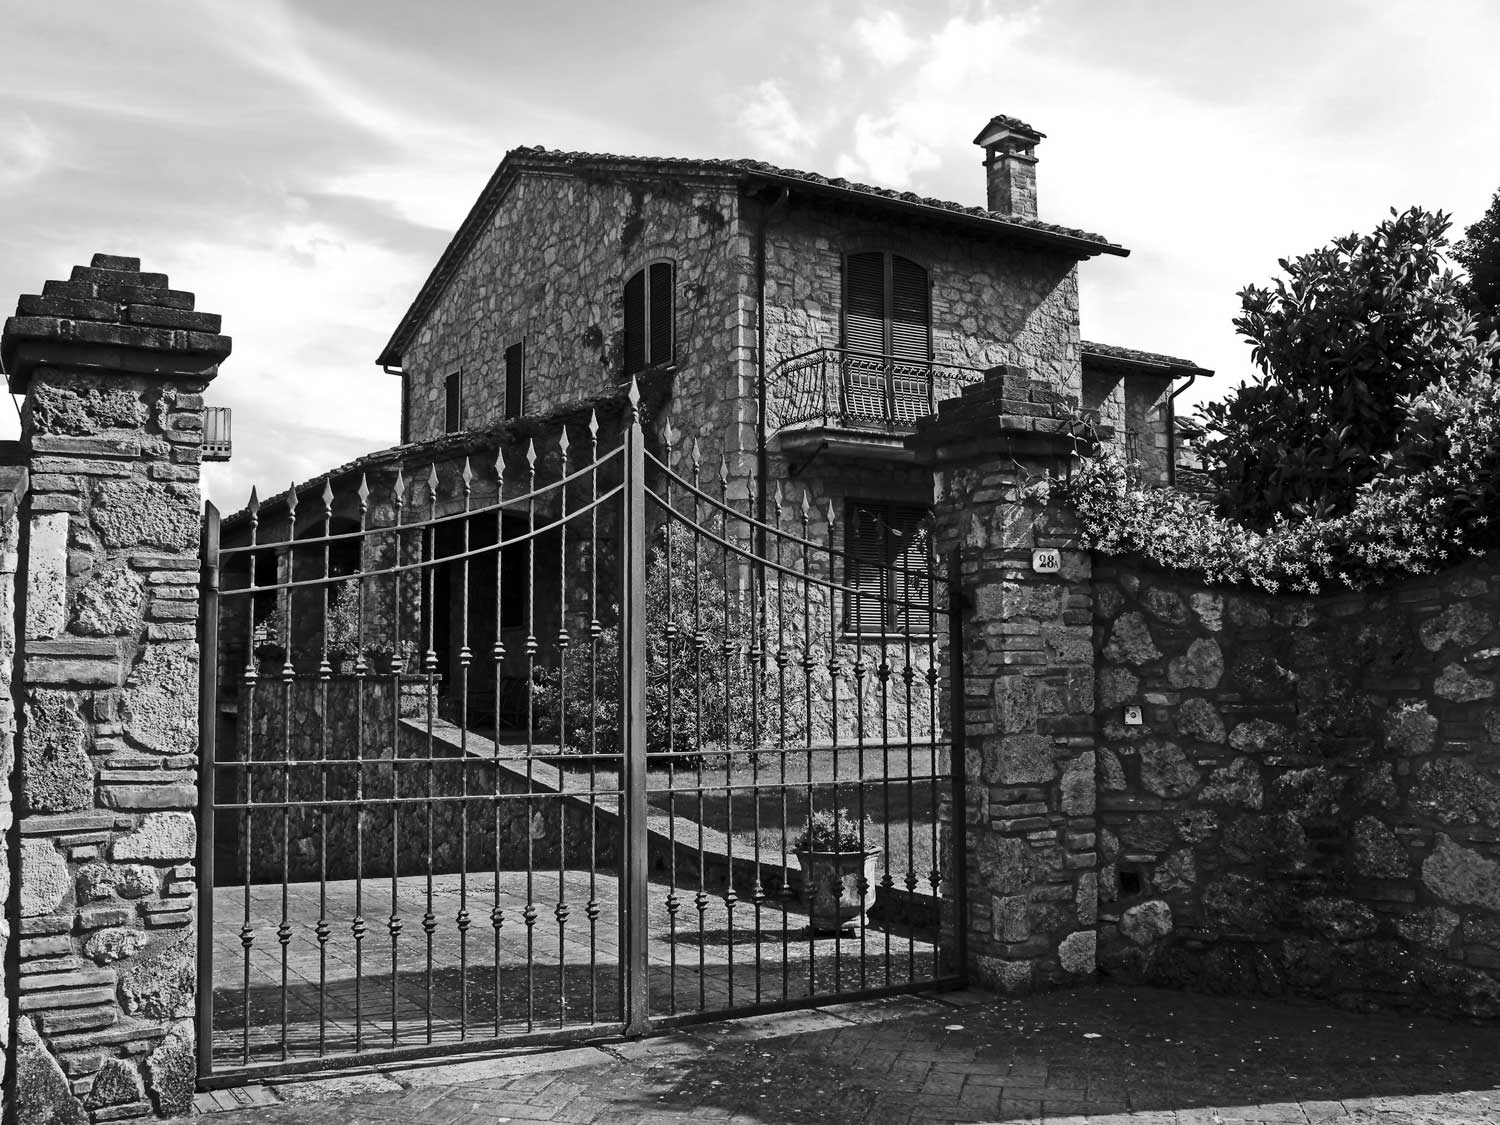 11 - Villa unifamiliare in via Firenze, Sarteano (SI) - Vista esterna del fronte nord